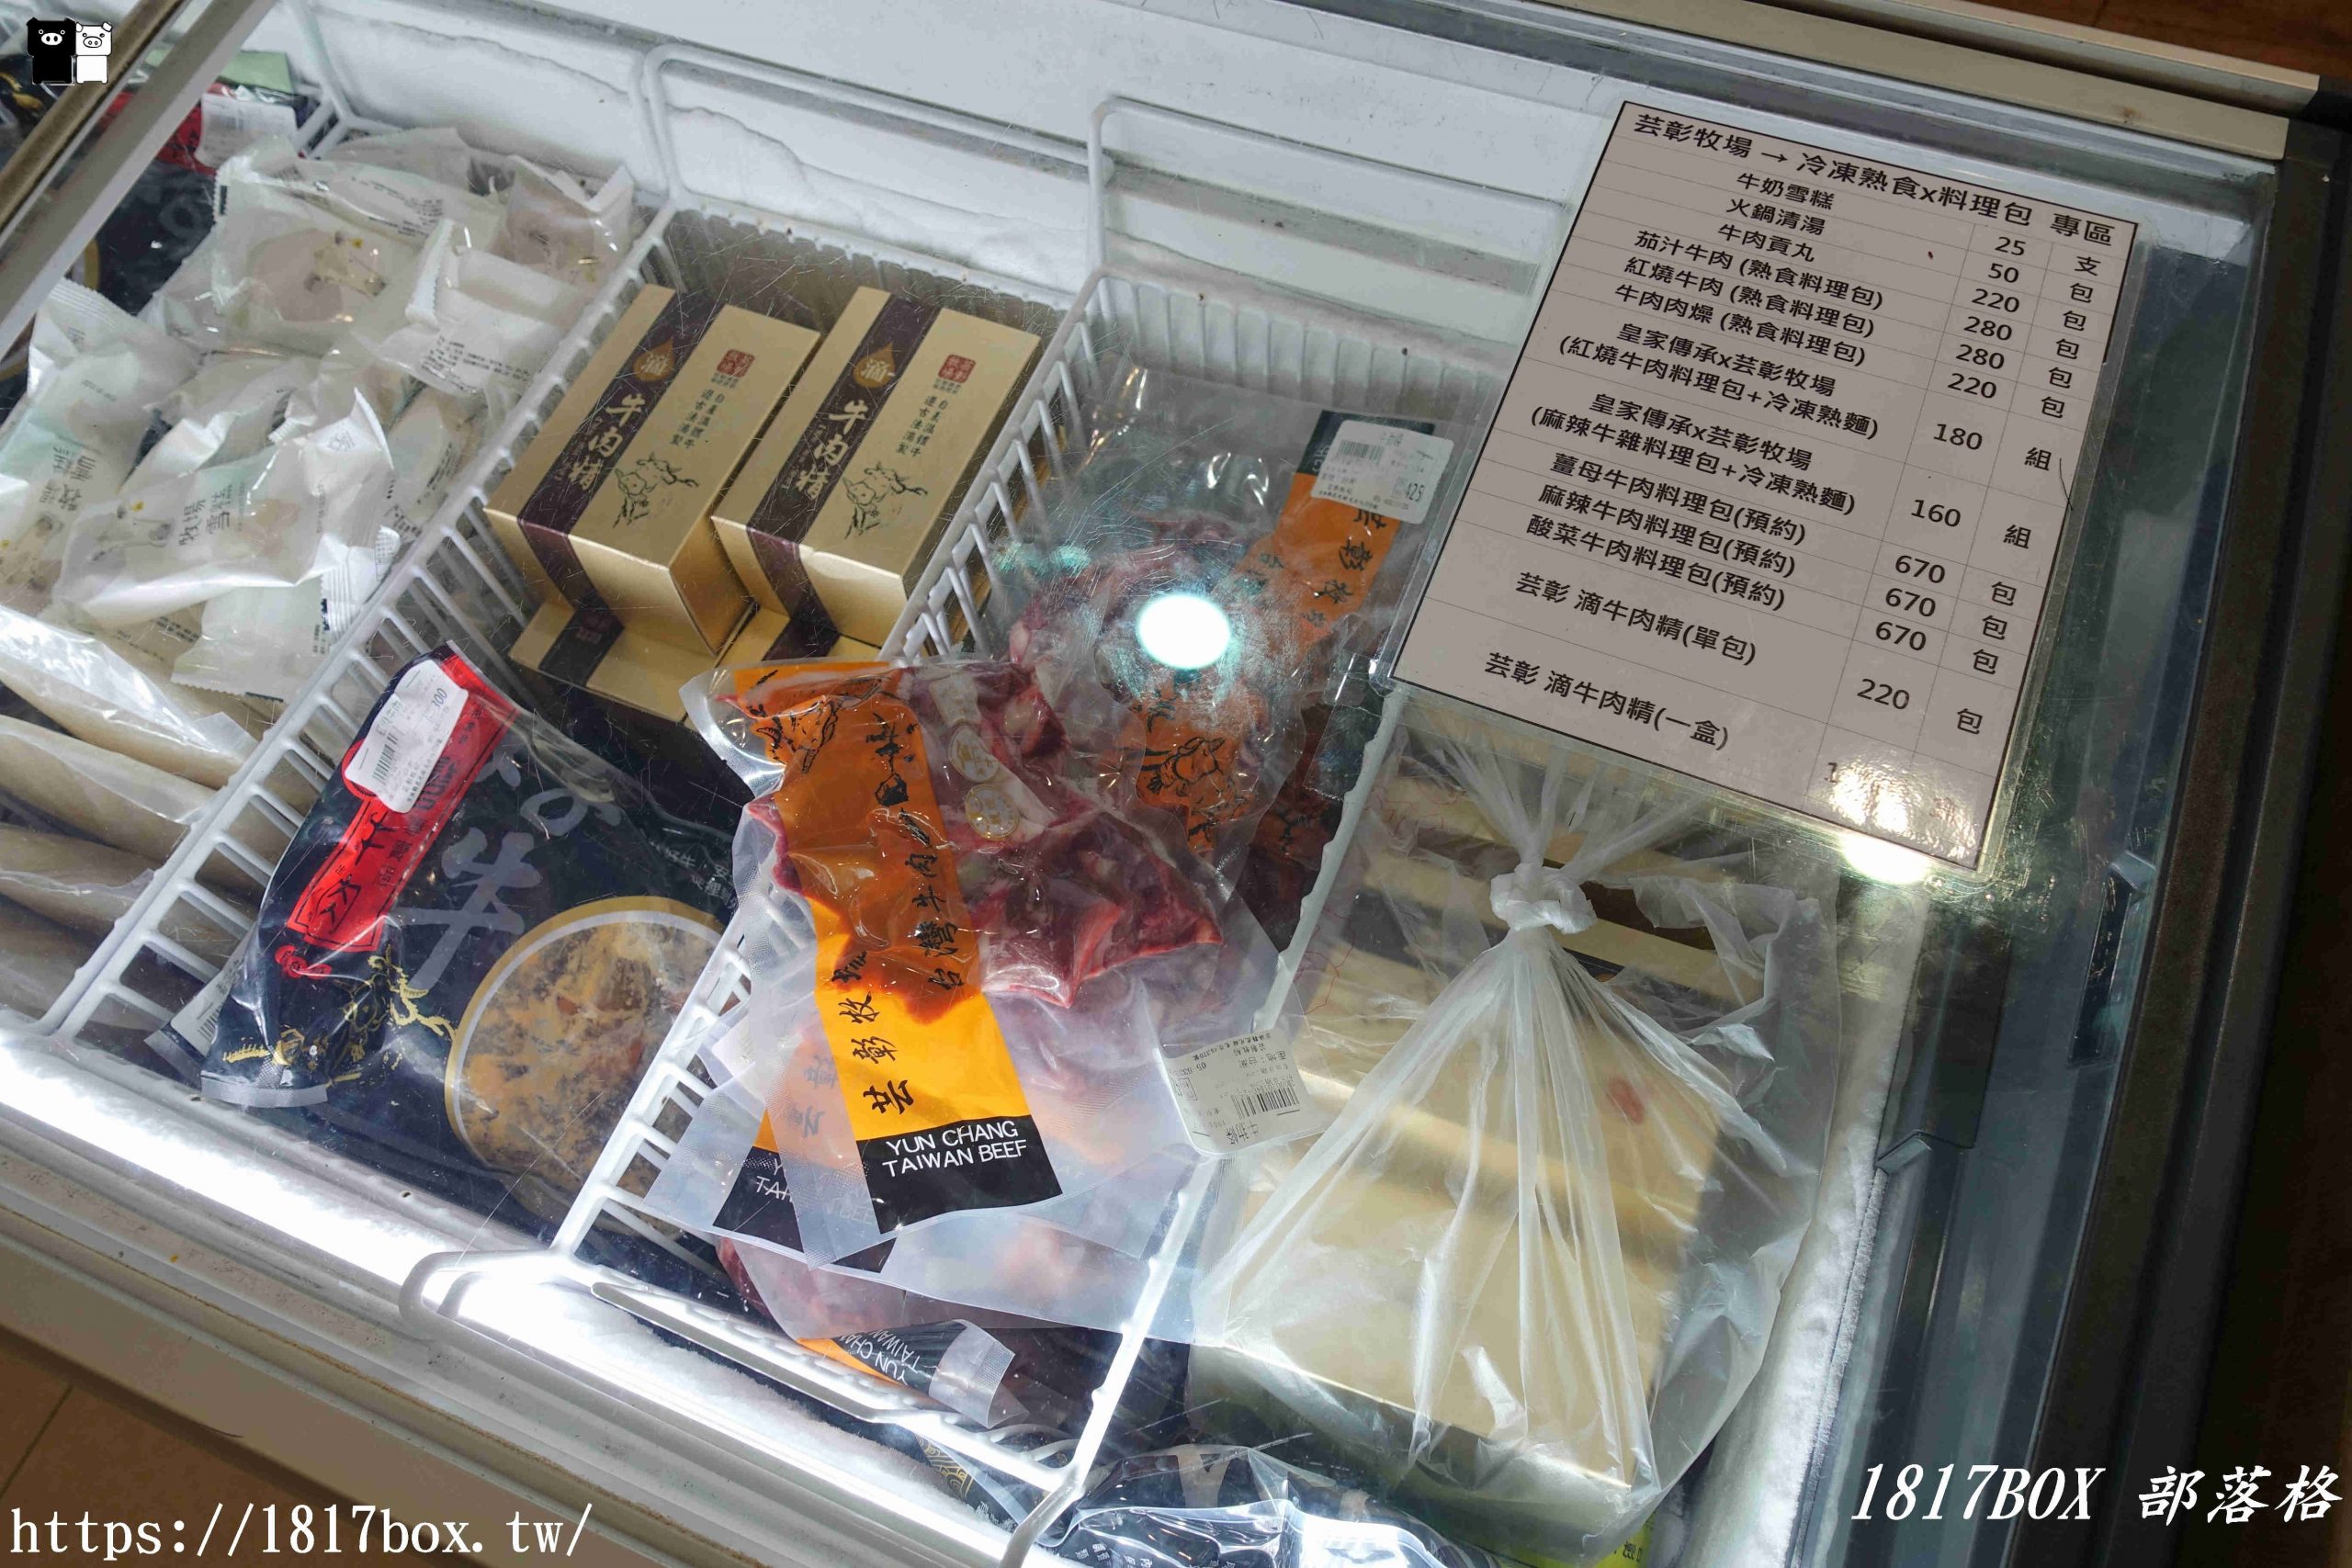 【雲林。虎尾】芸彰牧場台灣牛肉專賣店。每日現切溫體牛肉。從牧場到餐桌。產地直送